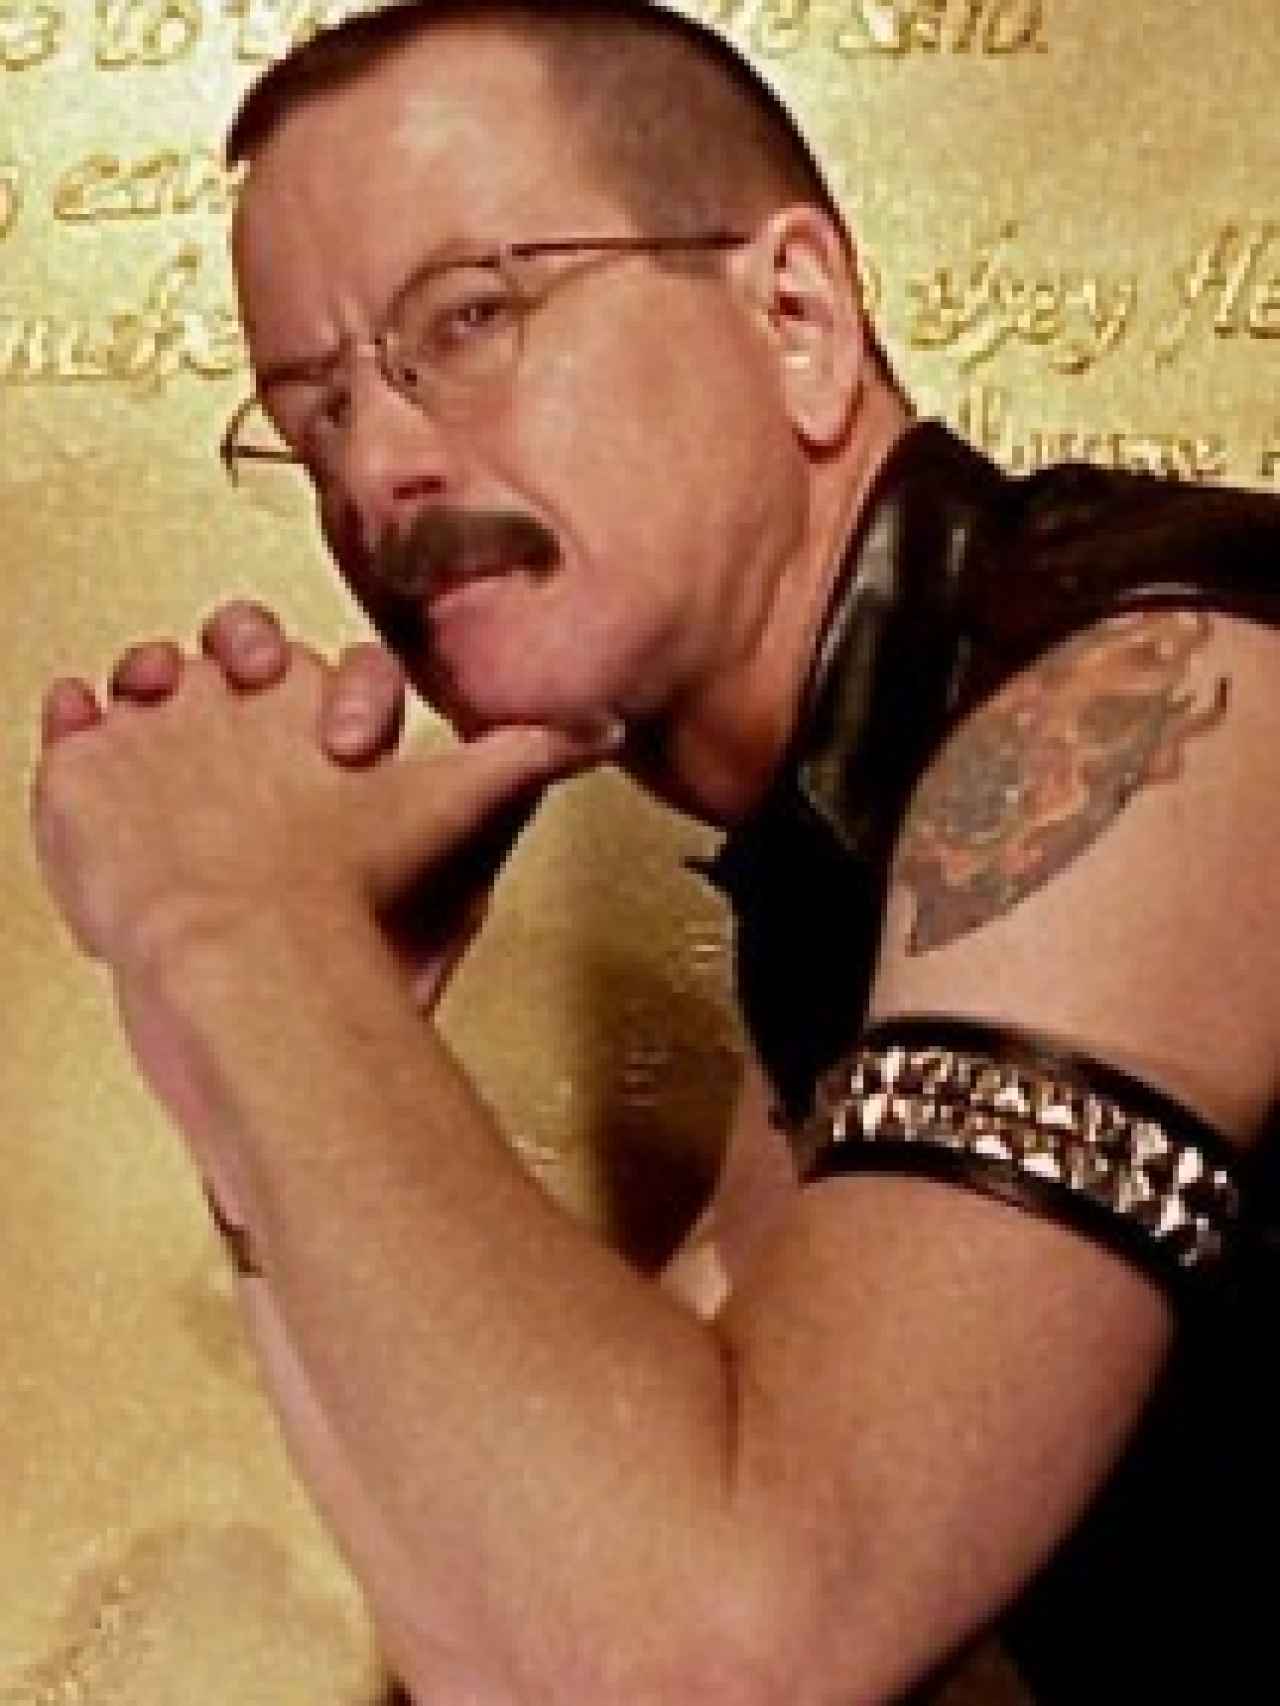 Skip Chasey, el conocido representante, tenía esa otra cara de maestro del BDSM.